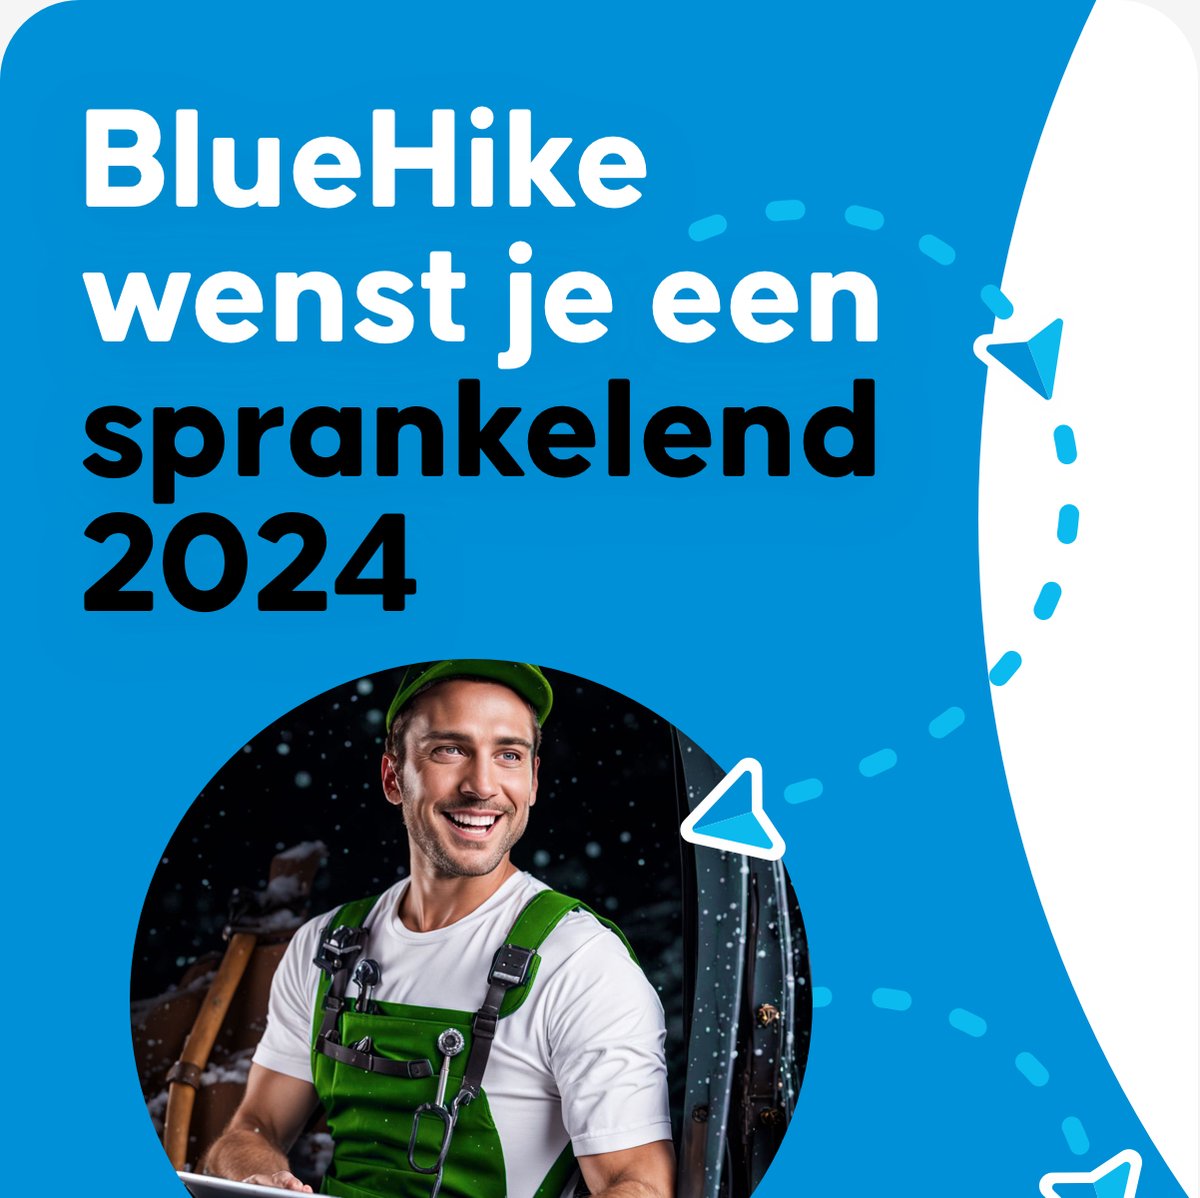 BlueHike wenst je een sprankelend 2024